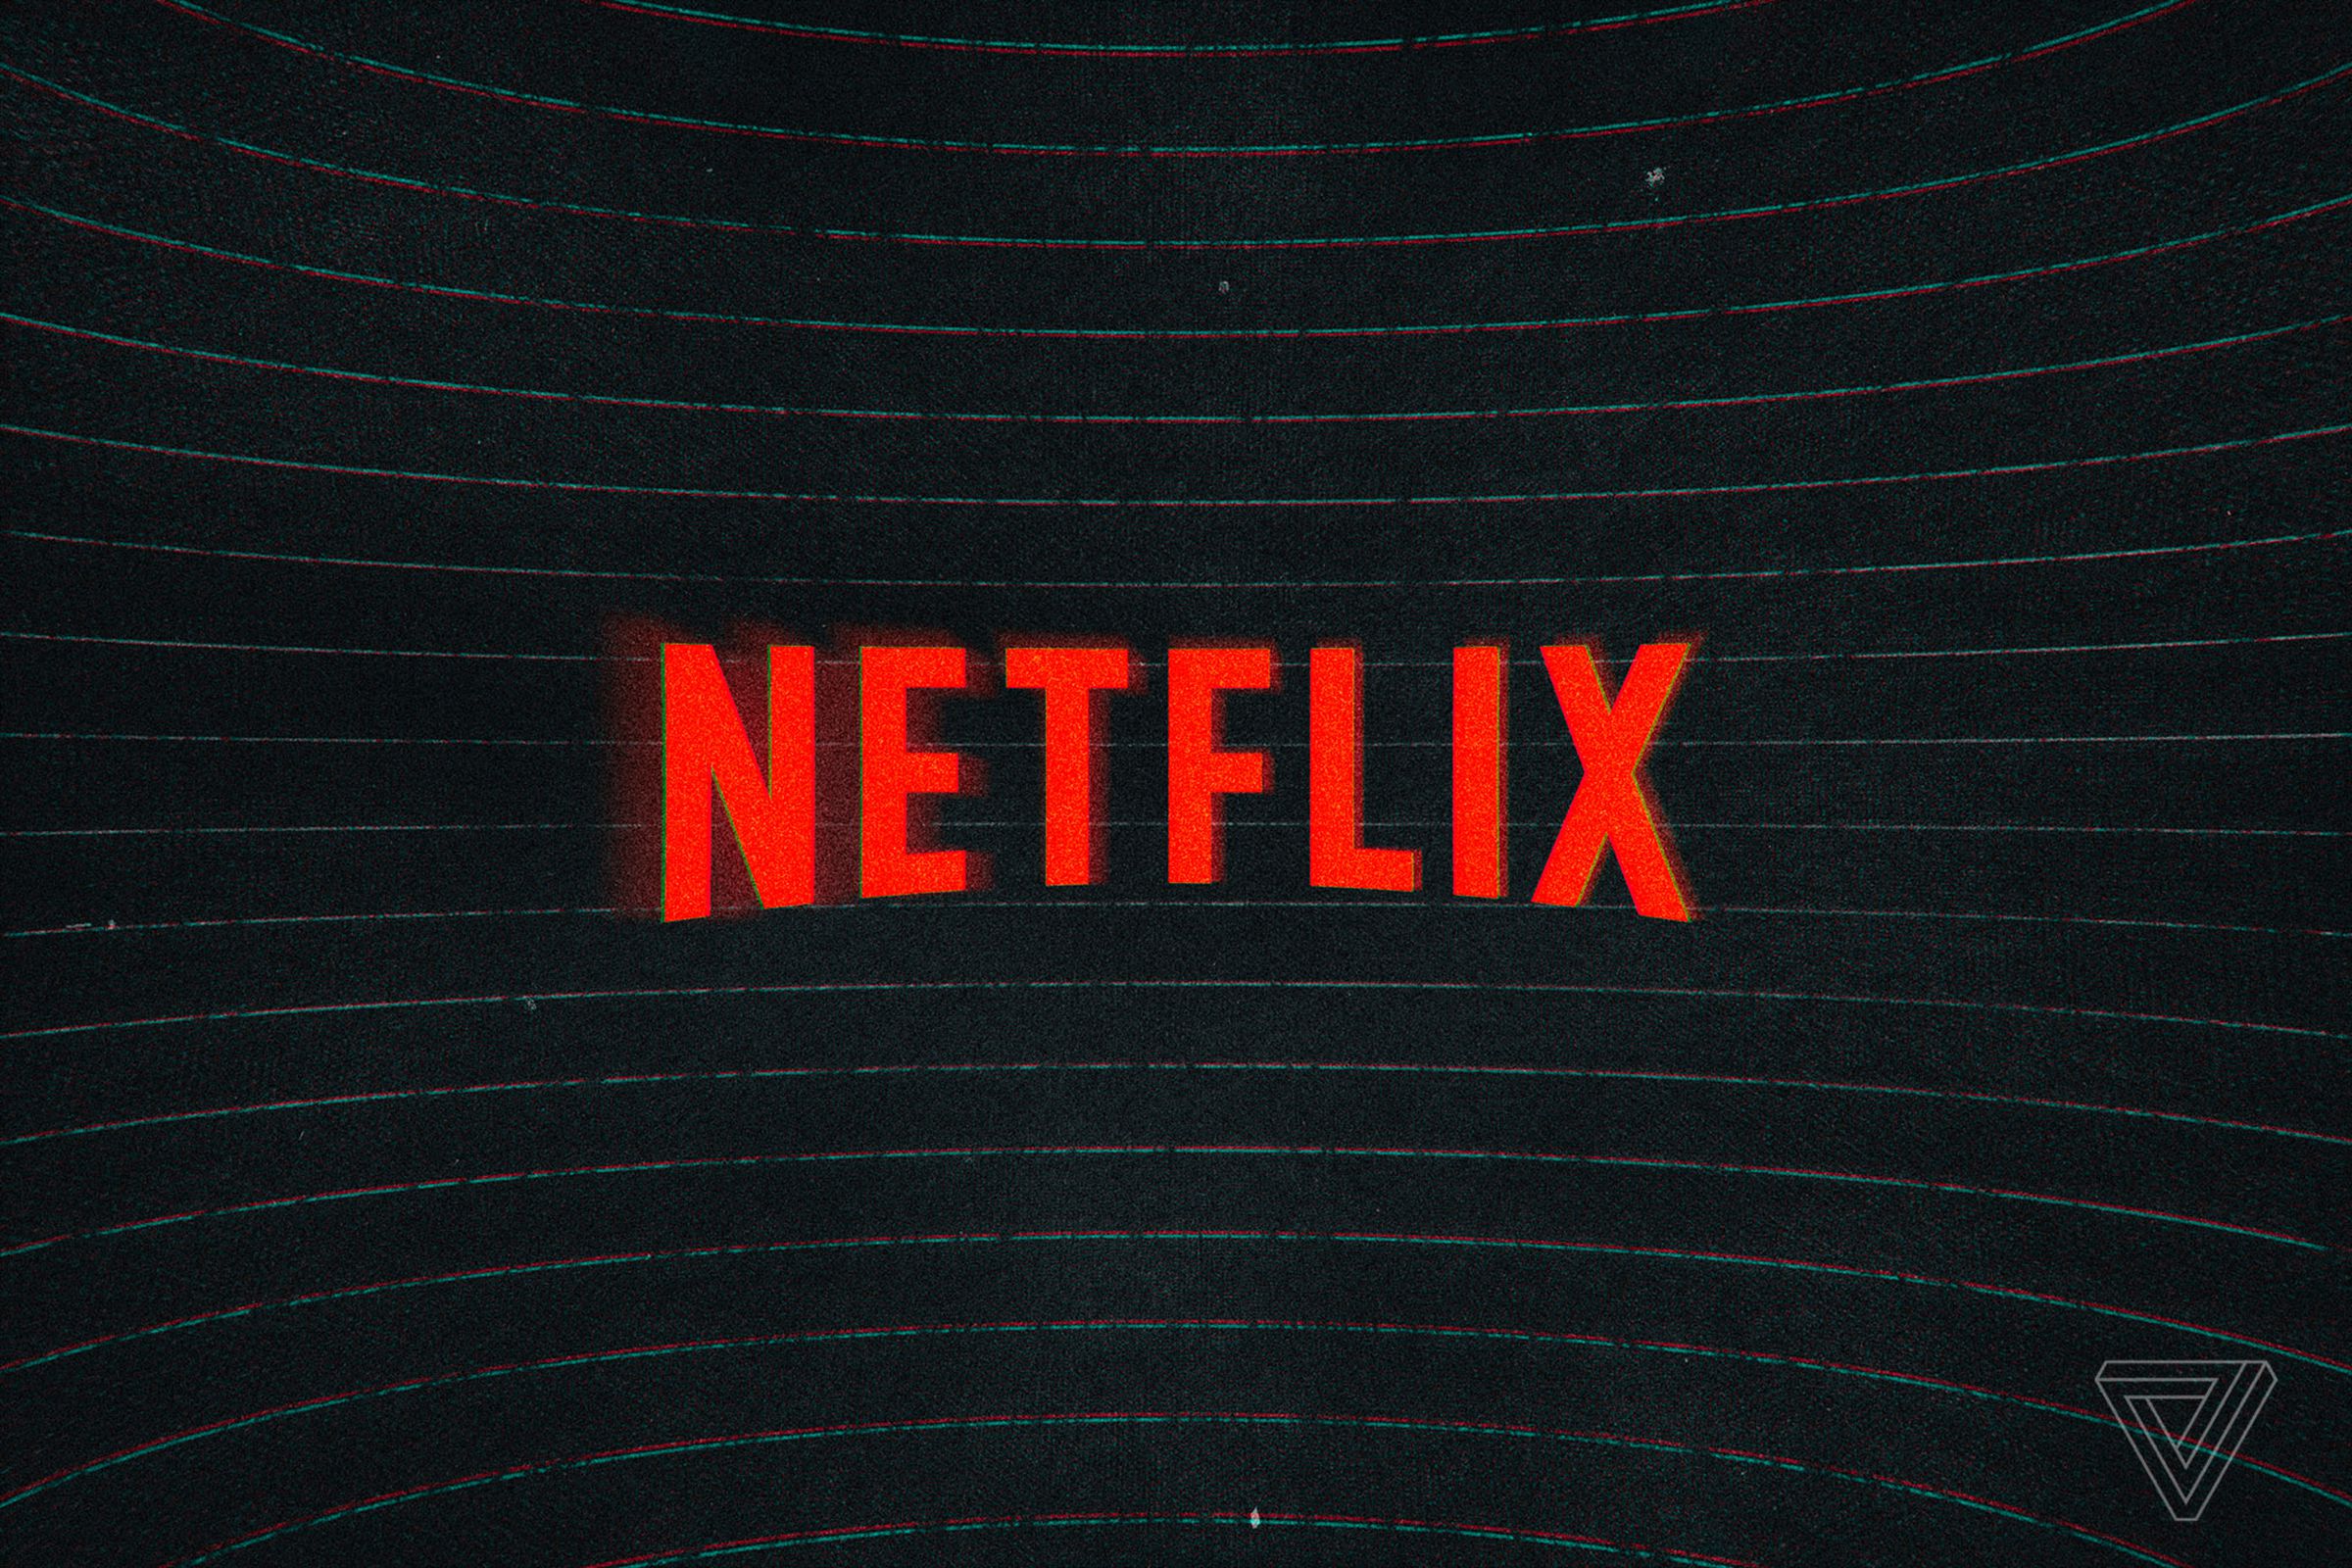 Netflix logo against a black backdrop